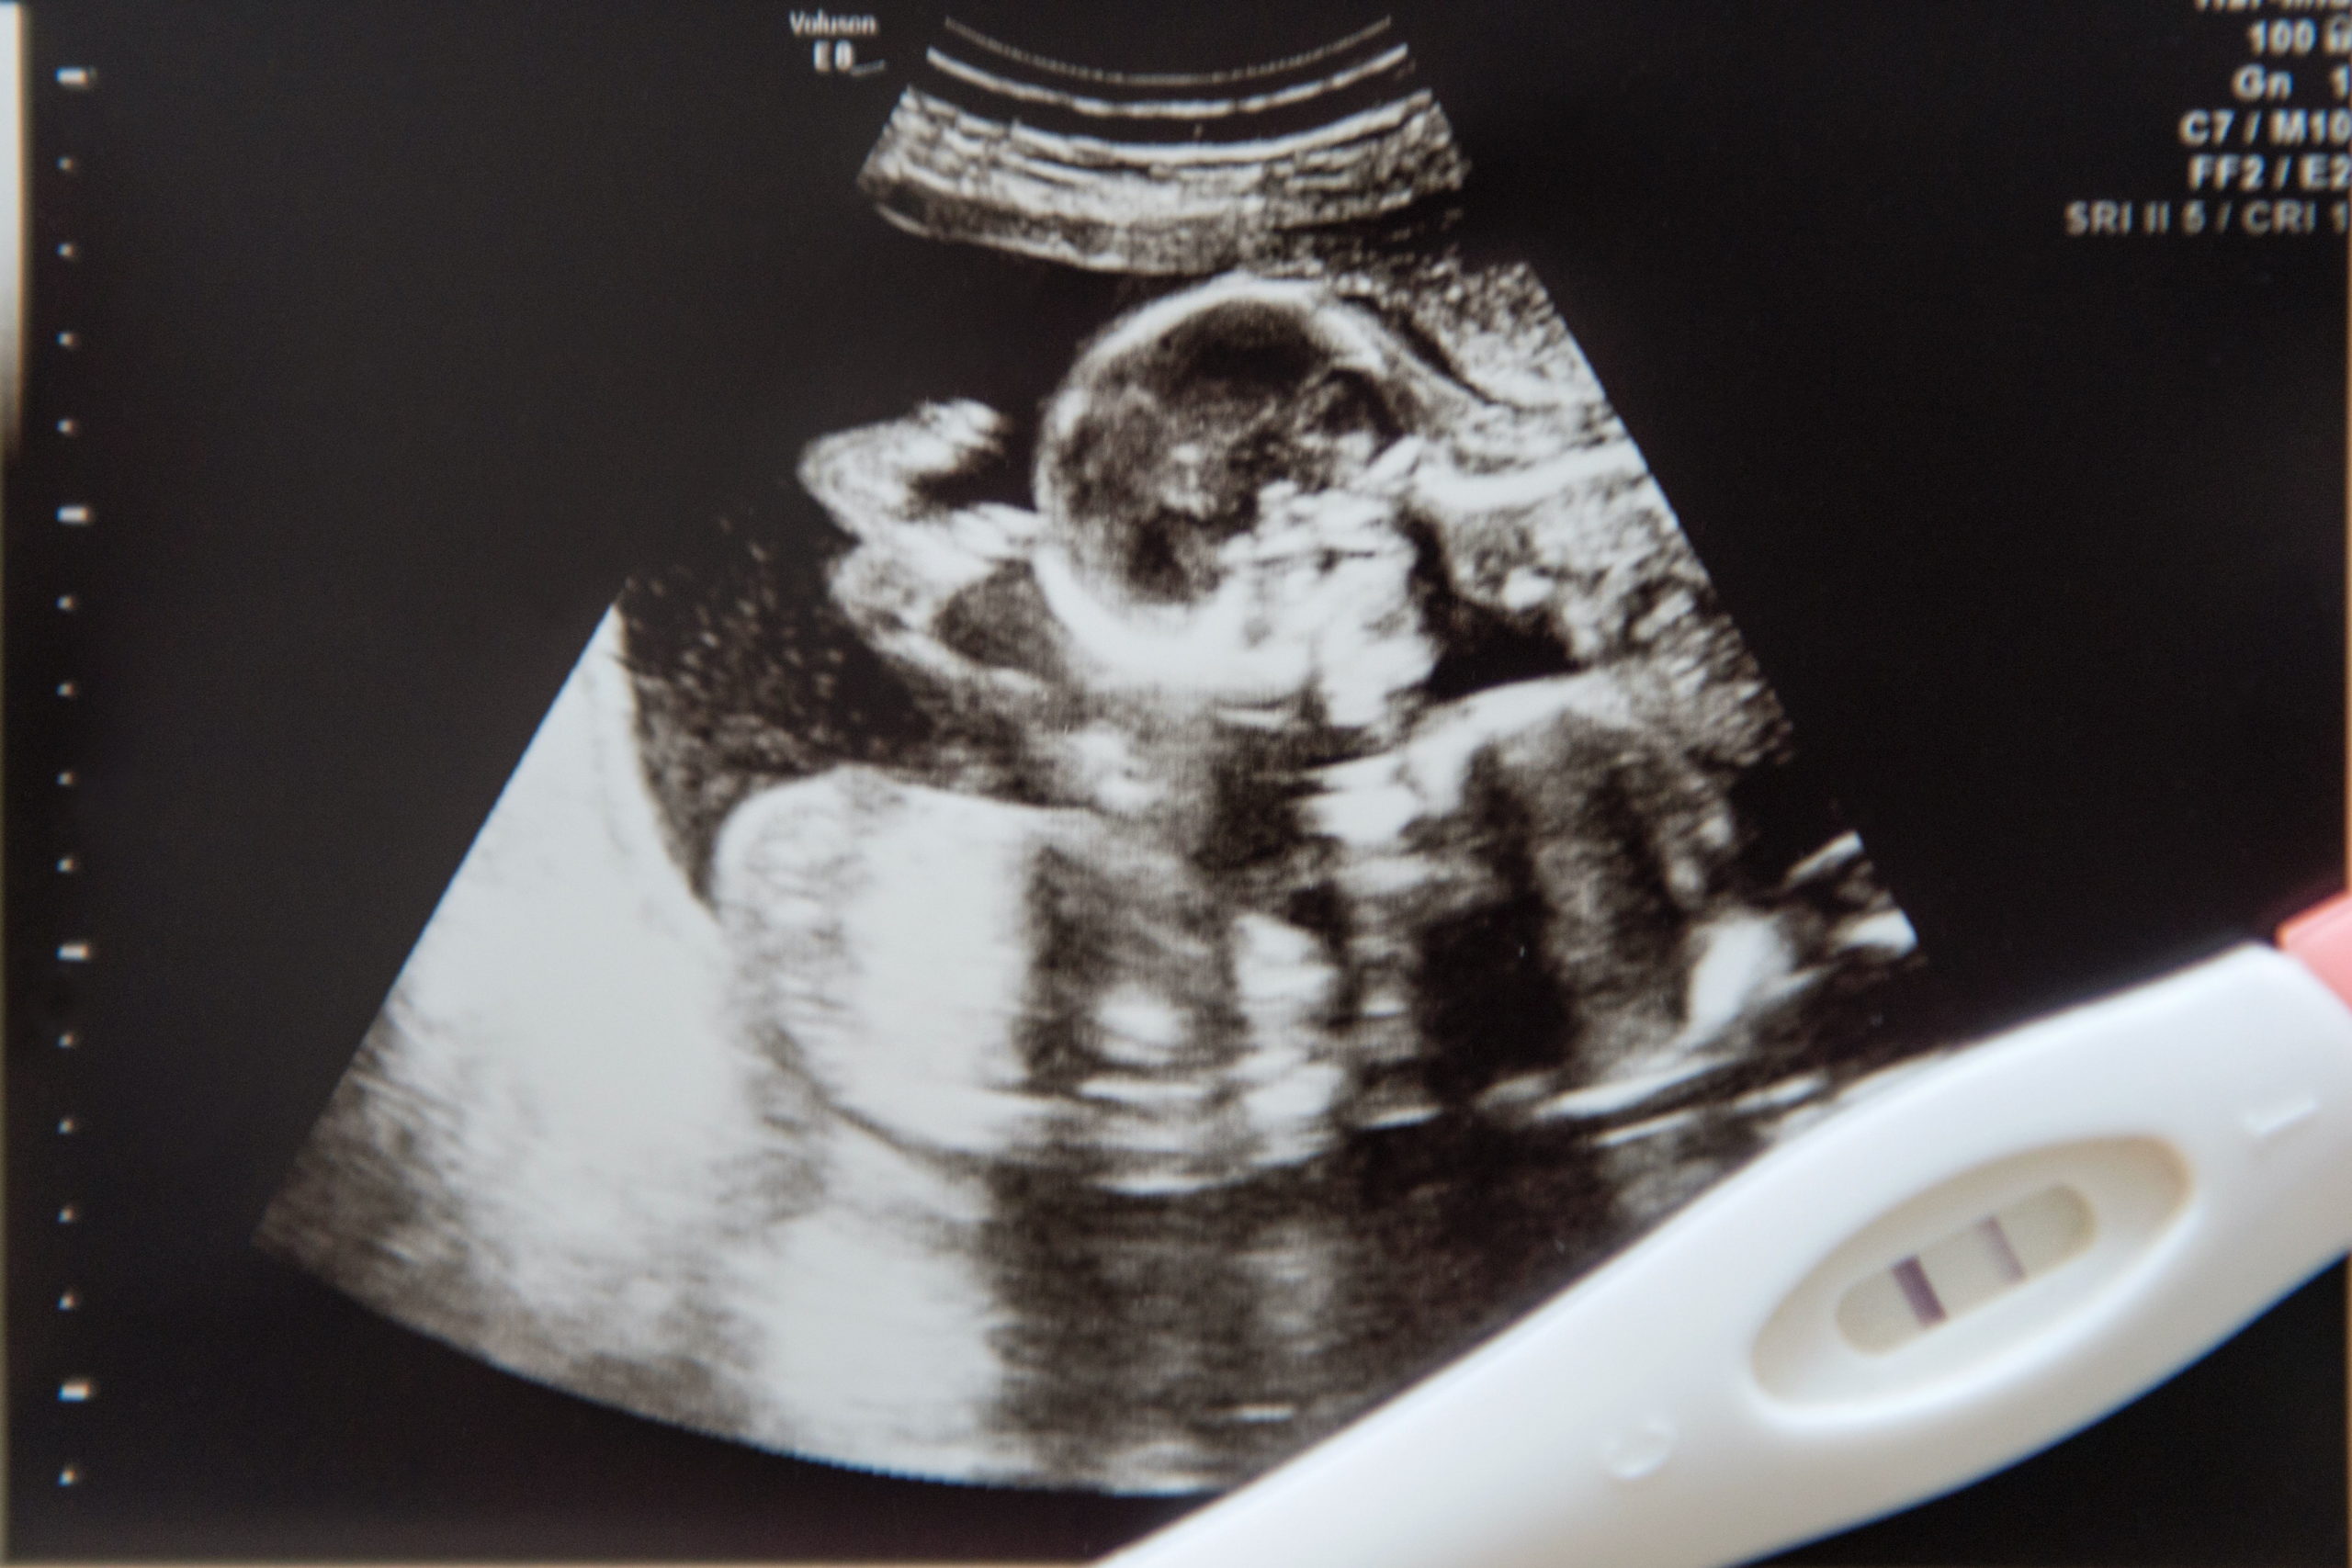 双子を妊娠した女性が10日後の排卵でまた受胎 重複妊娠 でお腹に3人の子 Page 2 ニュースサイトしらべぇ